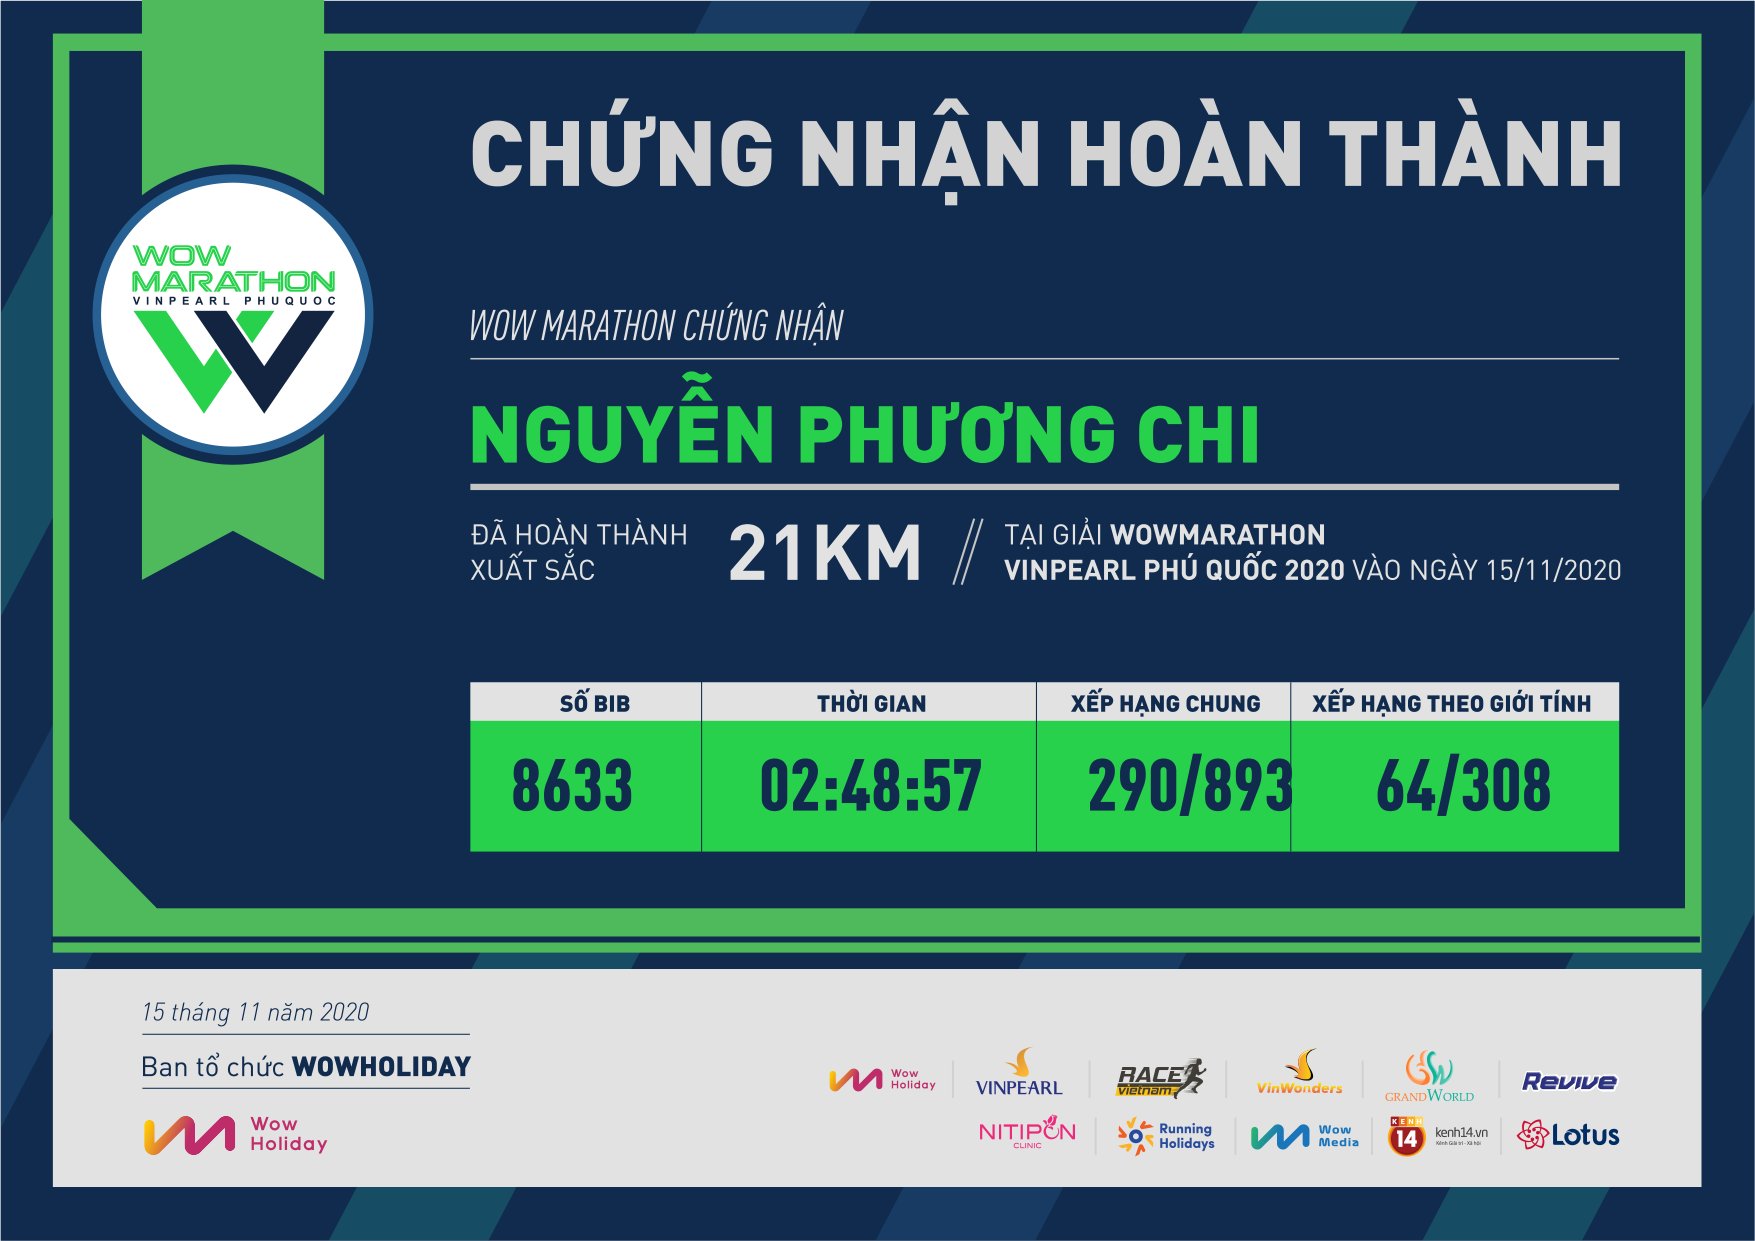 8633 - Nguyễn Phương Chi